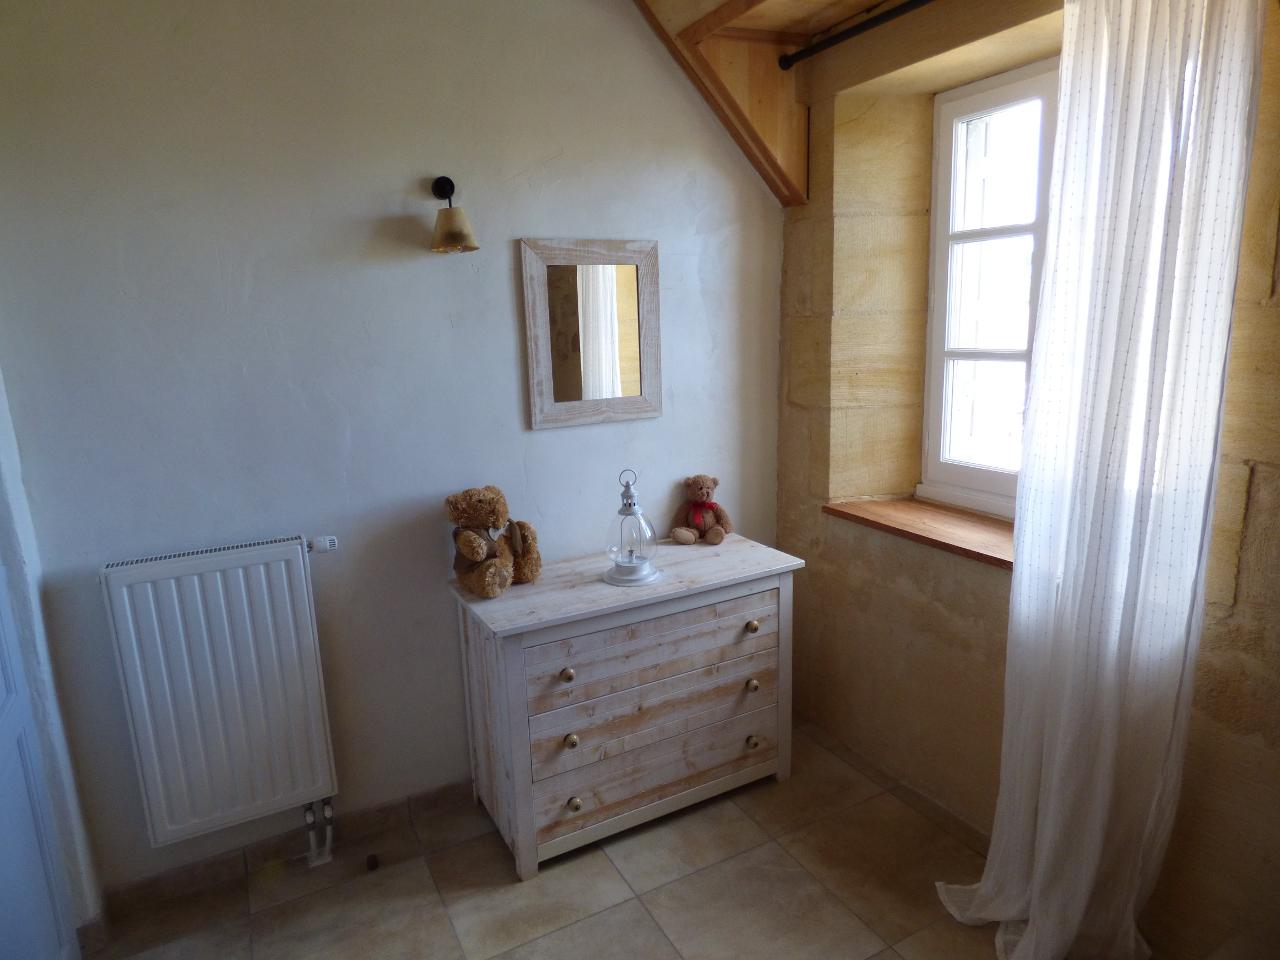 Hôte GreenGo: BRITAVIT Chambres et table d'Hôtes en Périgord - Image 8